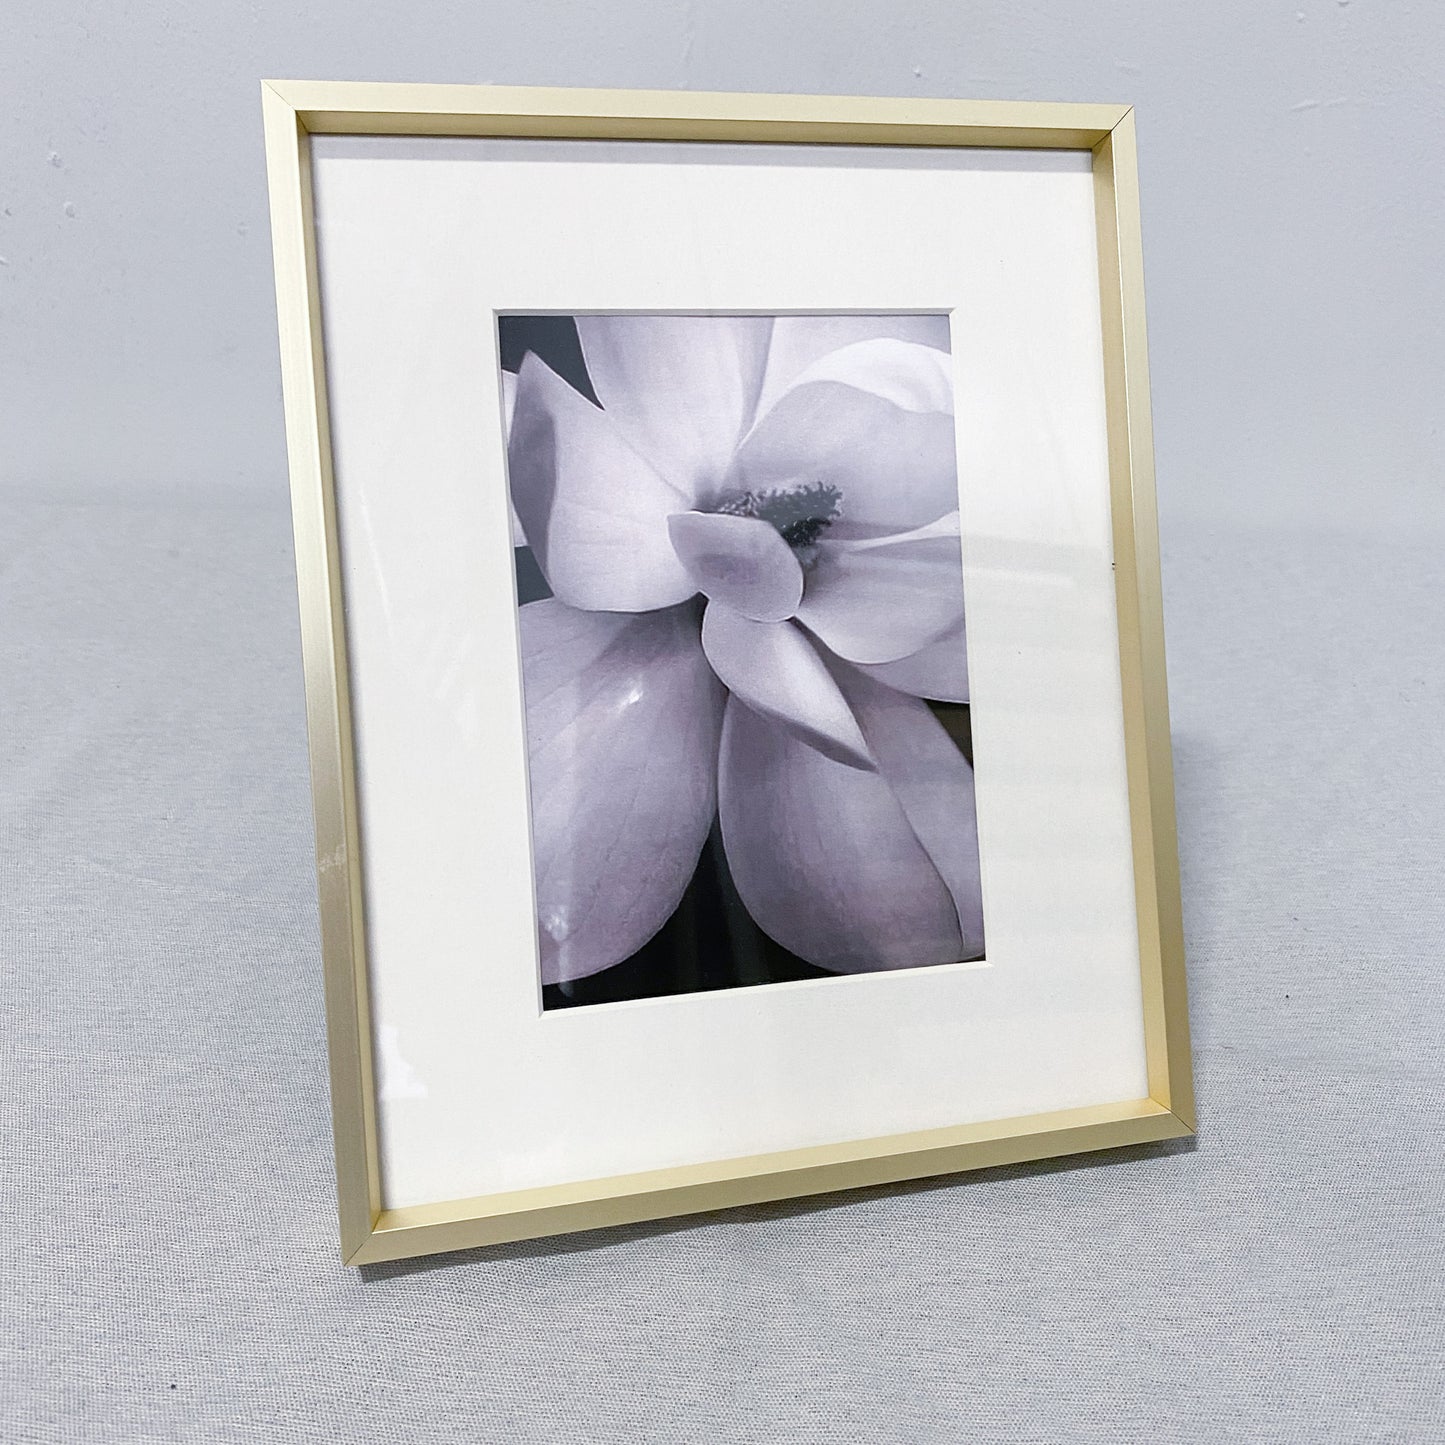 10.5" x 8.5" Framed Floral Artwork